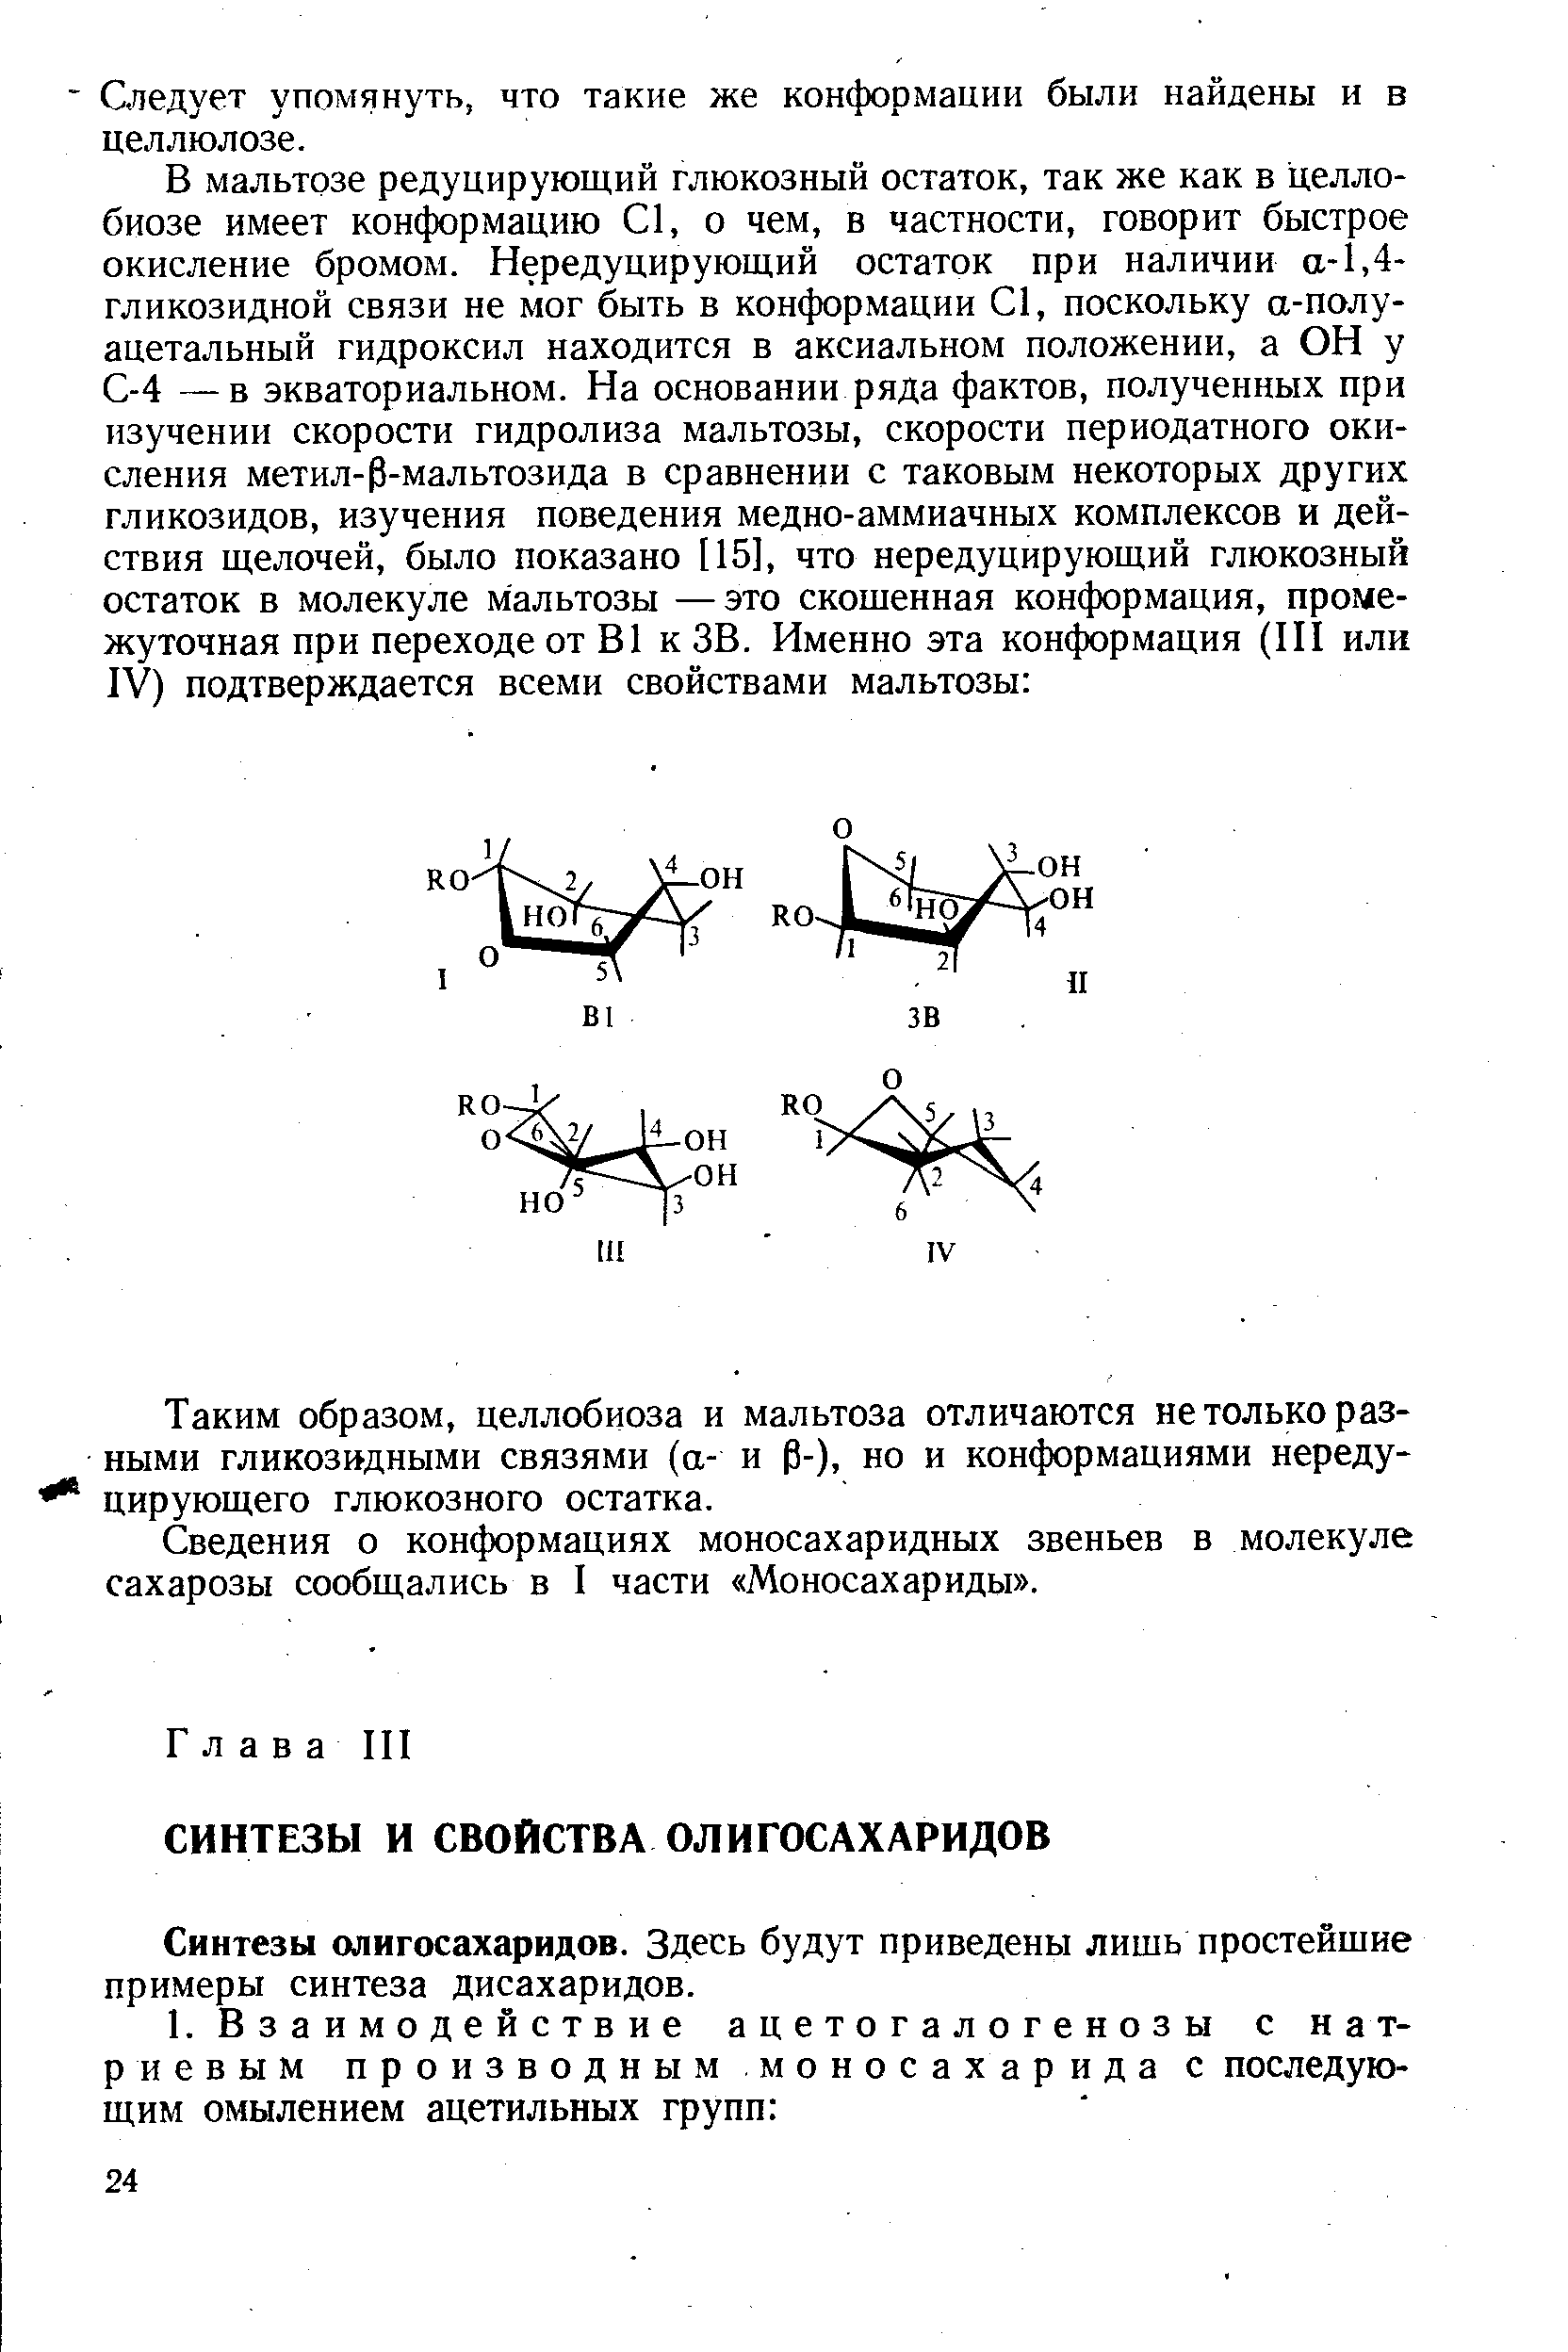 Синтезы олигосахаридов. Здесь будут приведены лишь простейшие примеры синтеза дисахаридов.